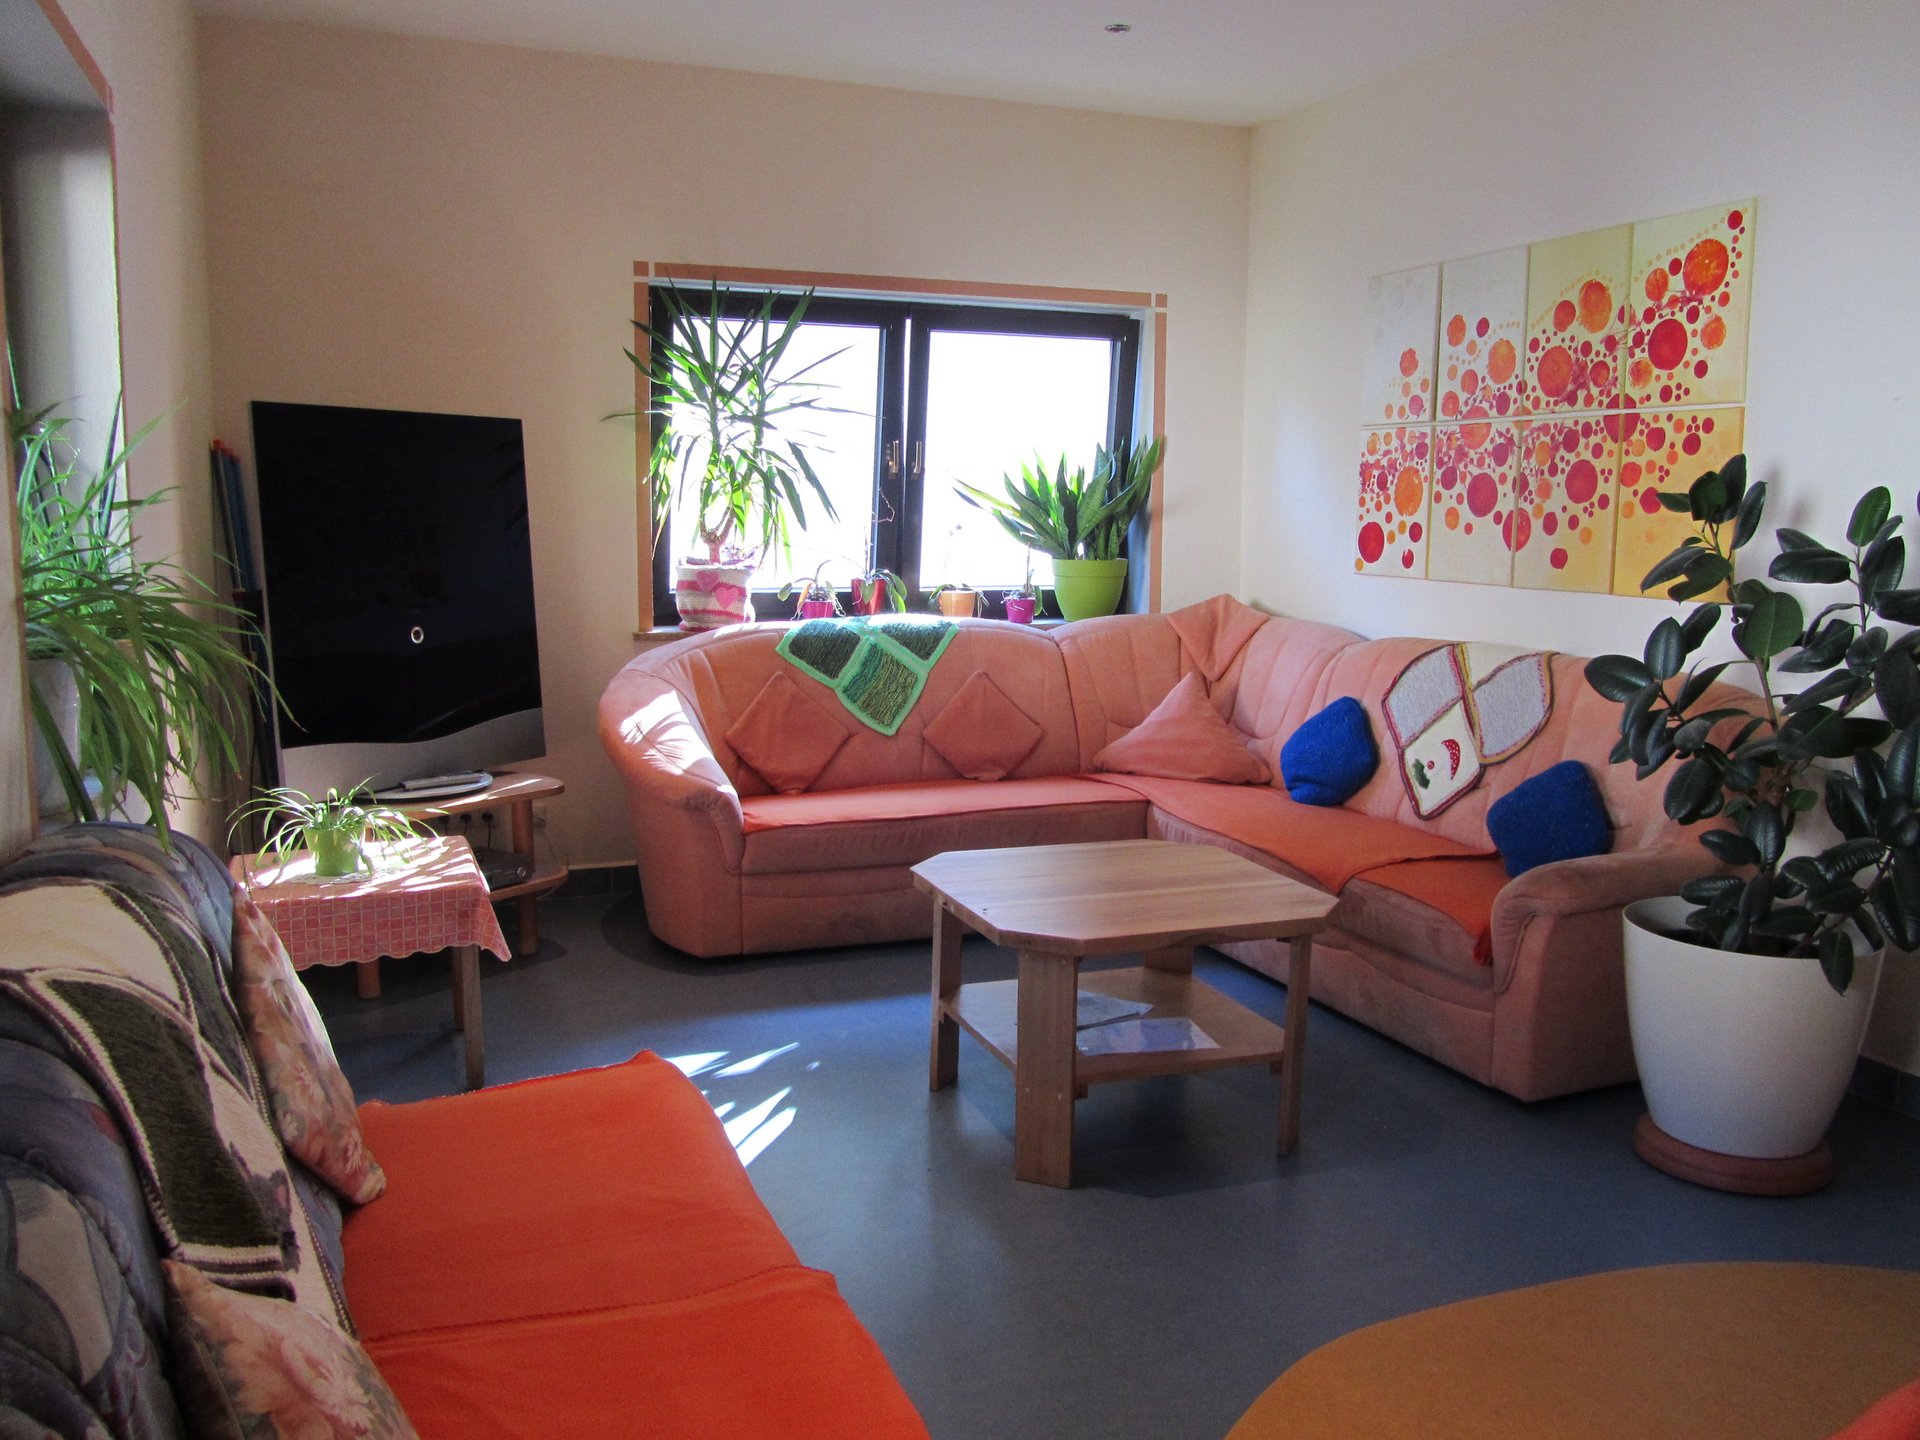 farbenfroher Aufenhaltsraum mit Sofa-Ecken, Couchtisch und Pflanzen